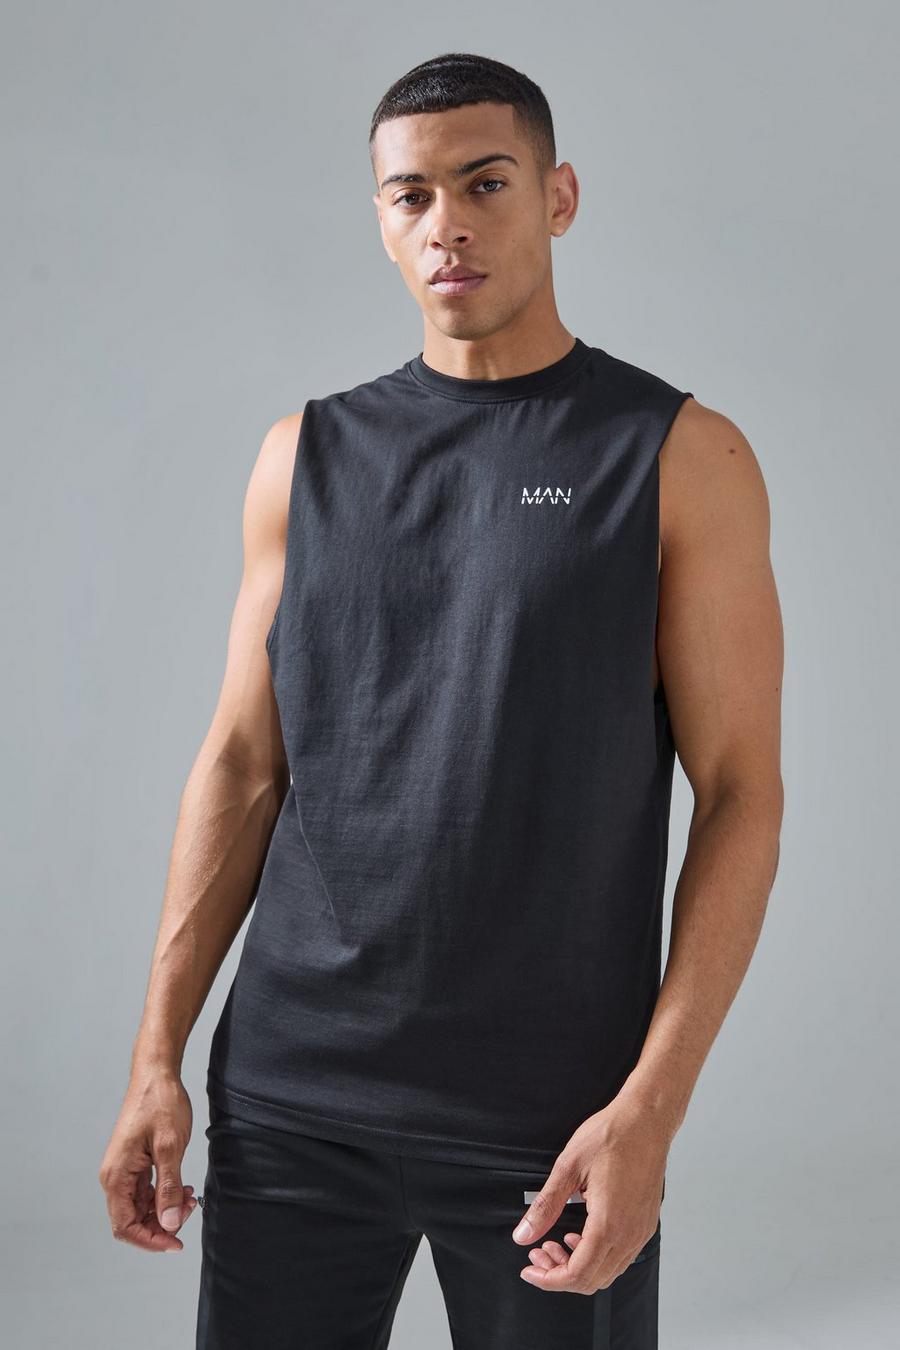 Camiseta sin mangas MAN Active de tela jersey con sisa ancha y escote pronunciado, Black